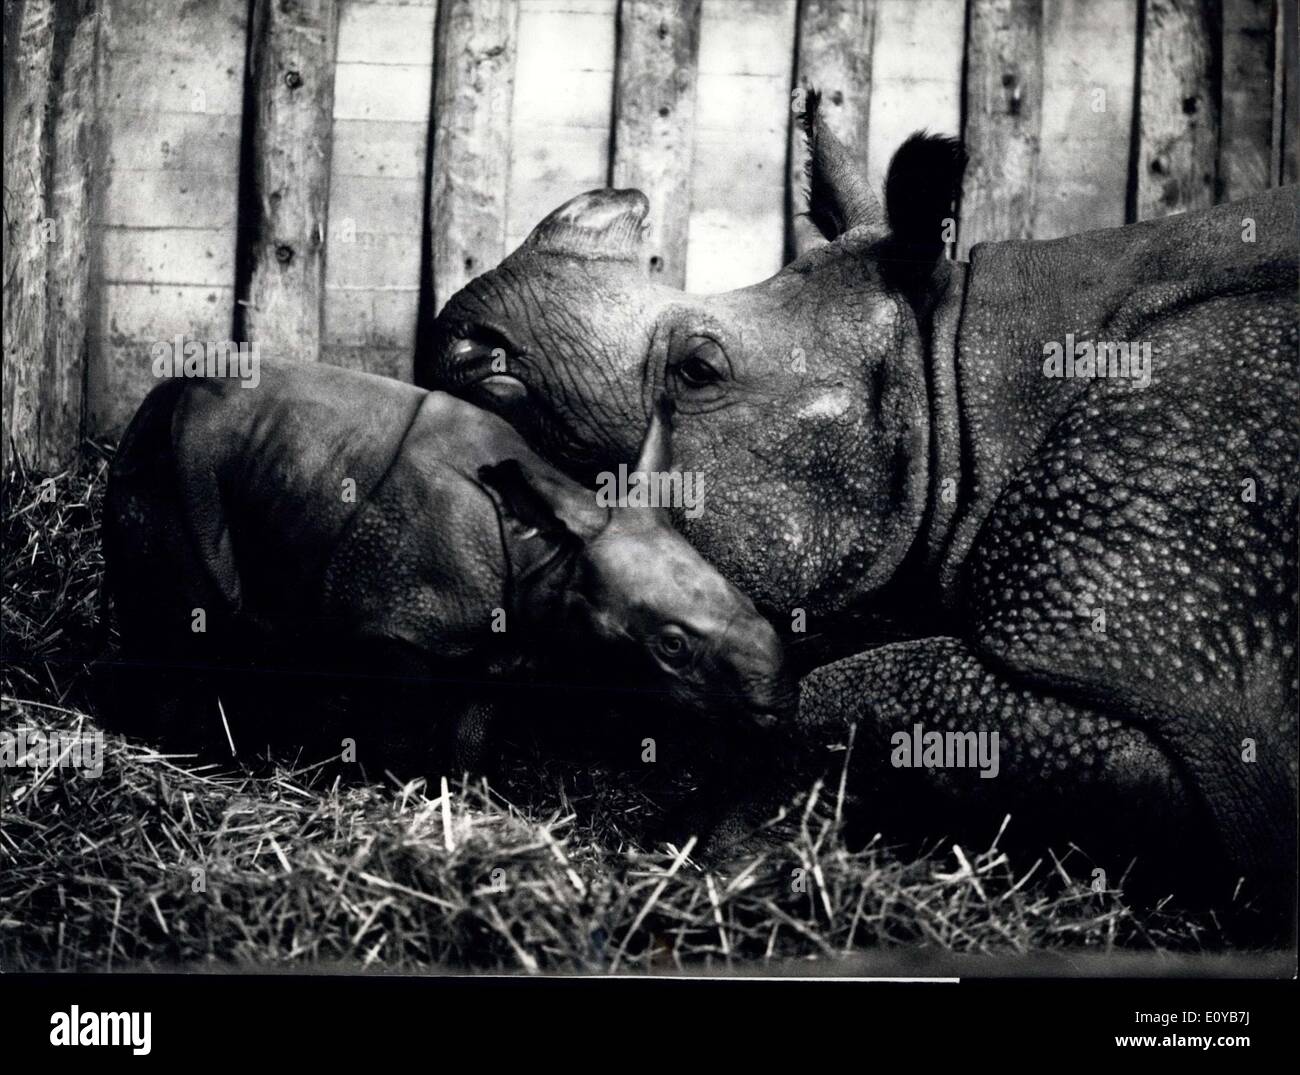 10 octobre 1969 - Élevage d'exploiter le zoo de Bâle : un succès de reproduction absolument extraordinaire dans le jardin zoologique de Bâle : La dixième rhinocerus blindé est née dans cette captivité suisse. La mère, ''Ma'' oola 1 700 kg lorsqu'elle a donné naissance à l'enfant de 76 kg le 5 octobre.. Ce célèbre race donne son jeune rhinocerus au zoo dans le monde entier. ''Mmère'' avec l'oola seulement quelques heures les femmes du baby. Banque D'Images